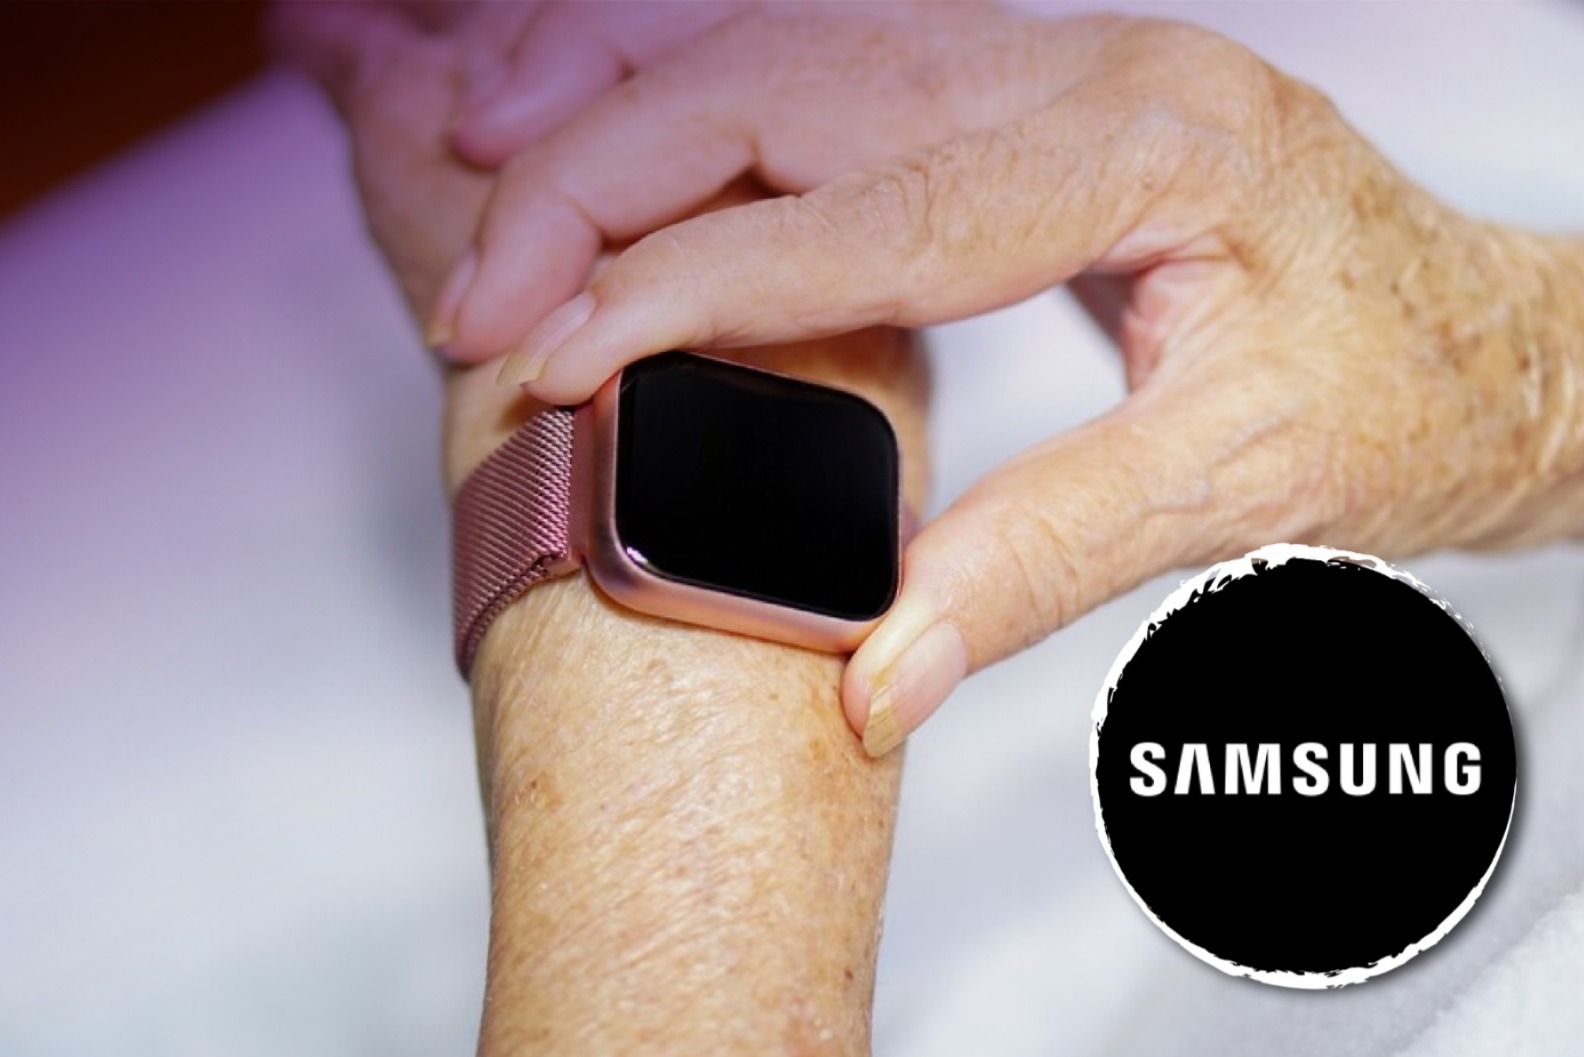 Mano de una persona mayor usando un reloj. A la derecha el logo de Samsung.